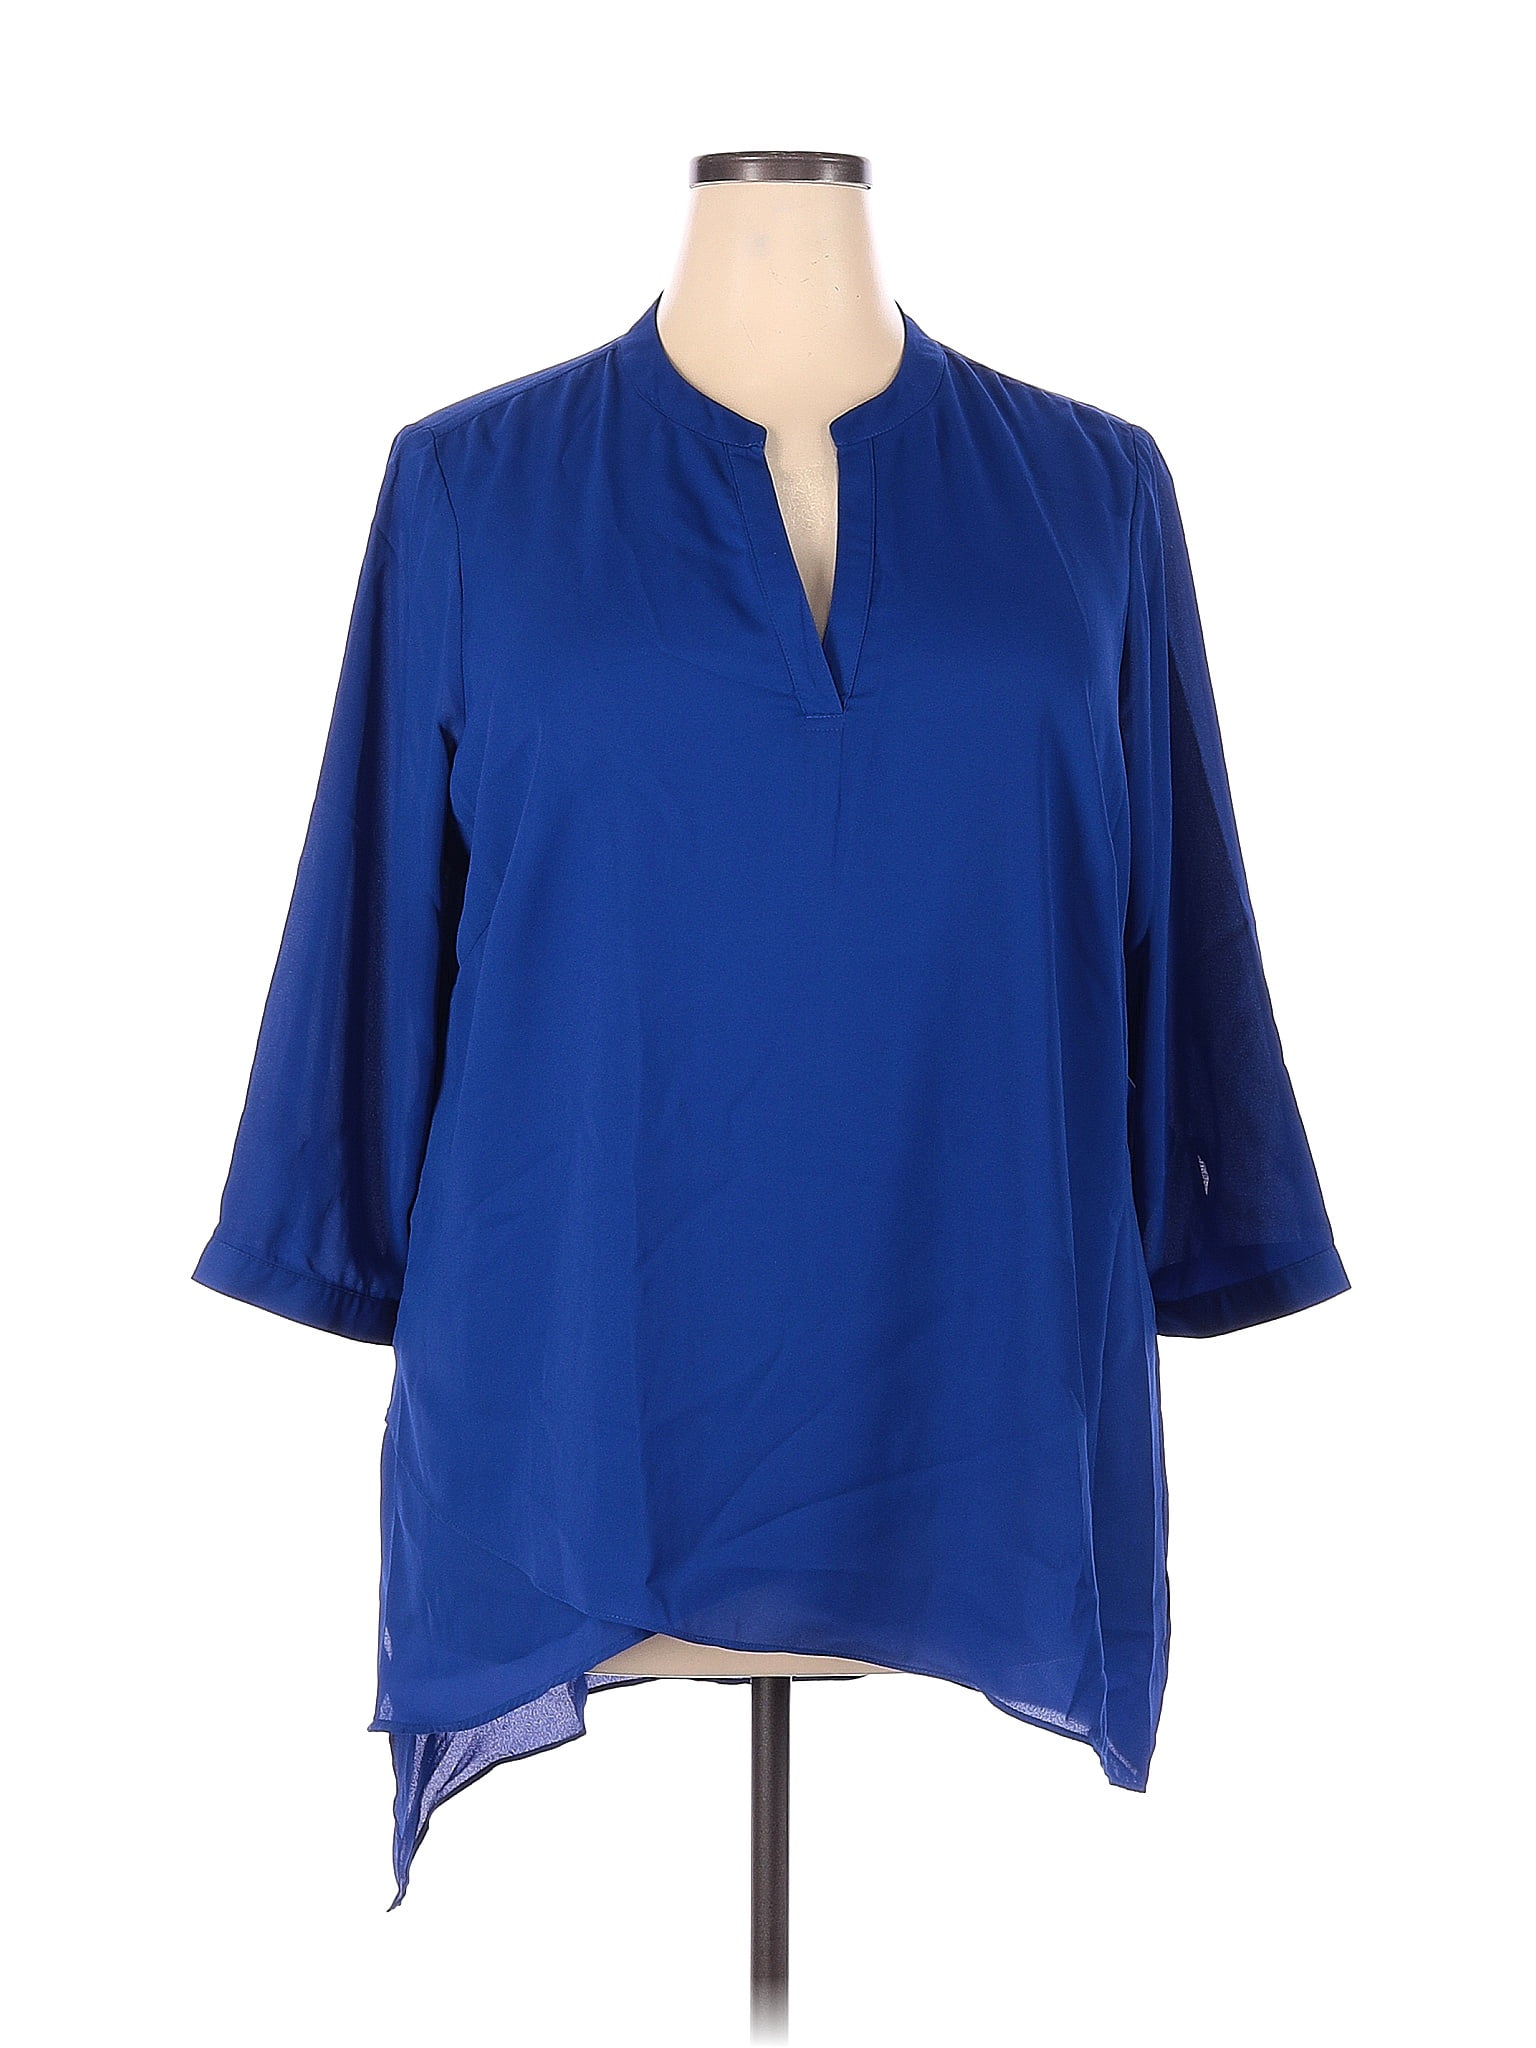 J.Jill Solid Blue Casual Dress Size 2X (Plus) - 69% off